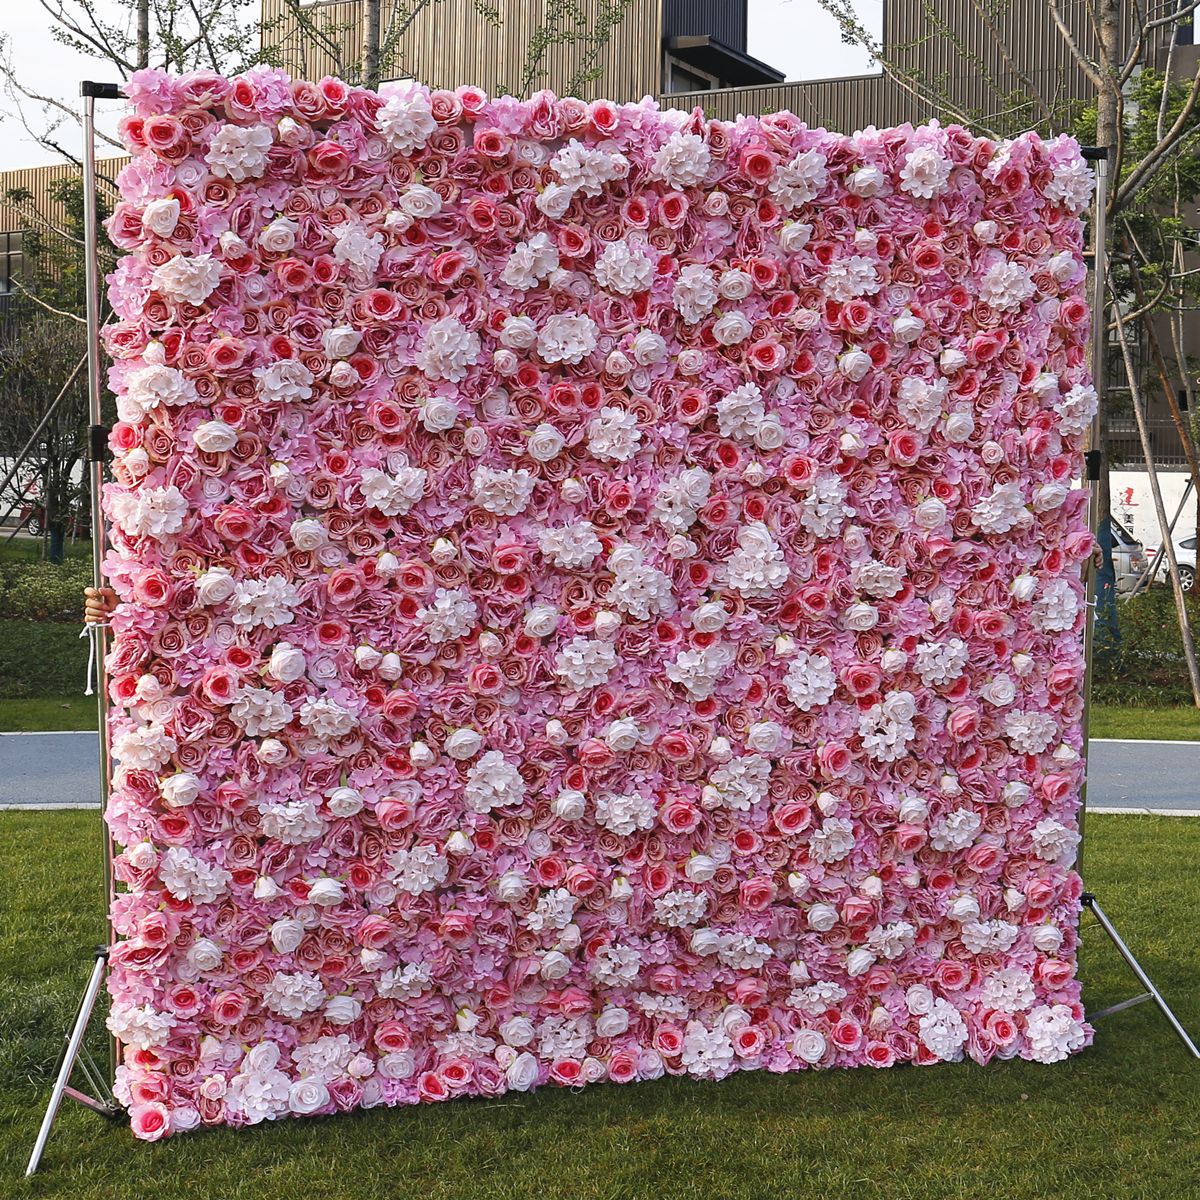  Wedding Fabric Bottom Simulation Flower Wall Background Wall Film Studio Background Silk Flower Row Plant Wall Flower Wall 